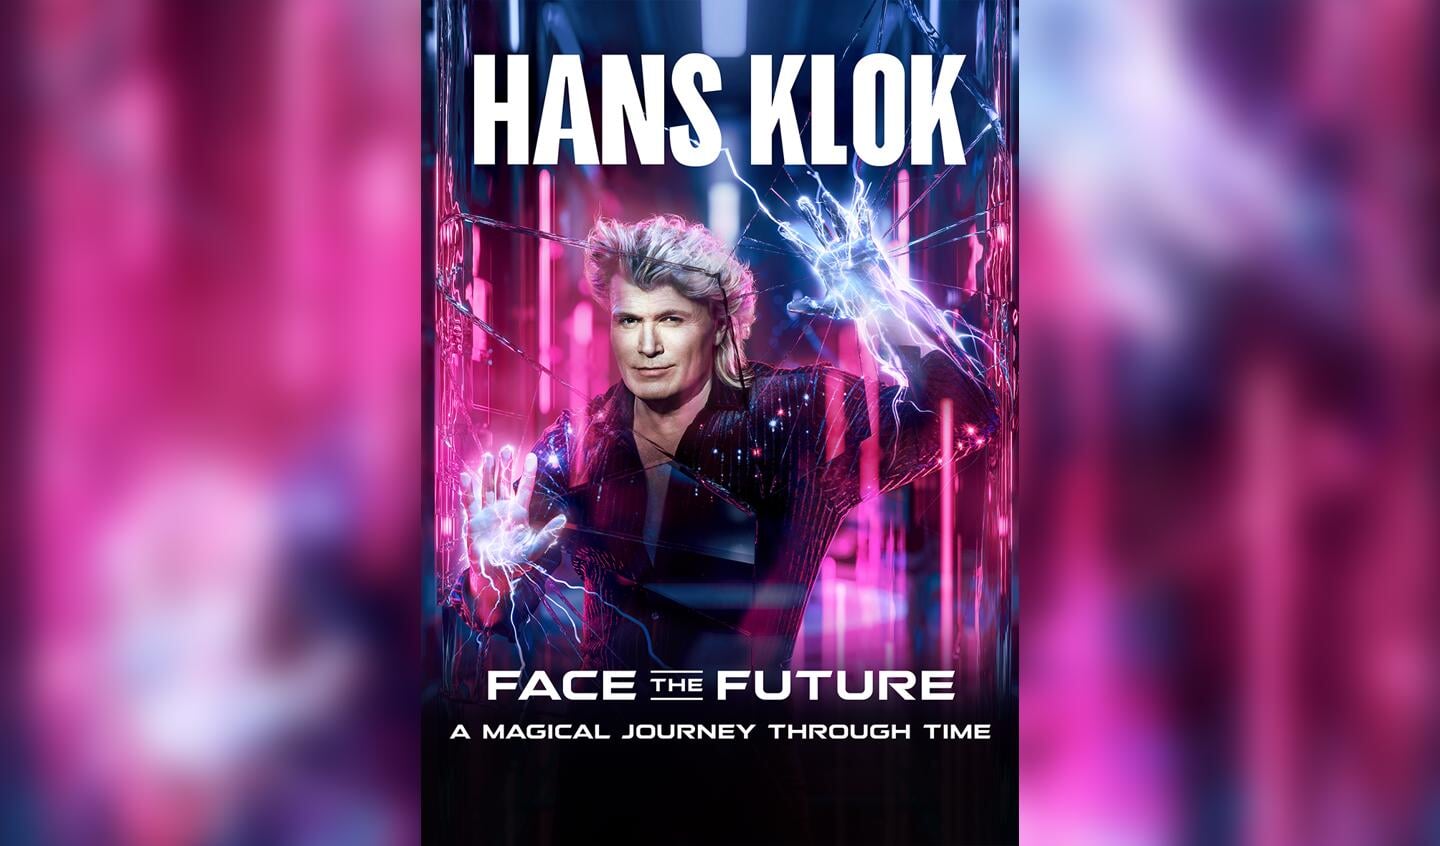 Hans Klok maakt zijn terugkeer op het podium met een spectaculaire nieuwe show! 